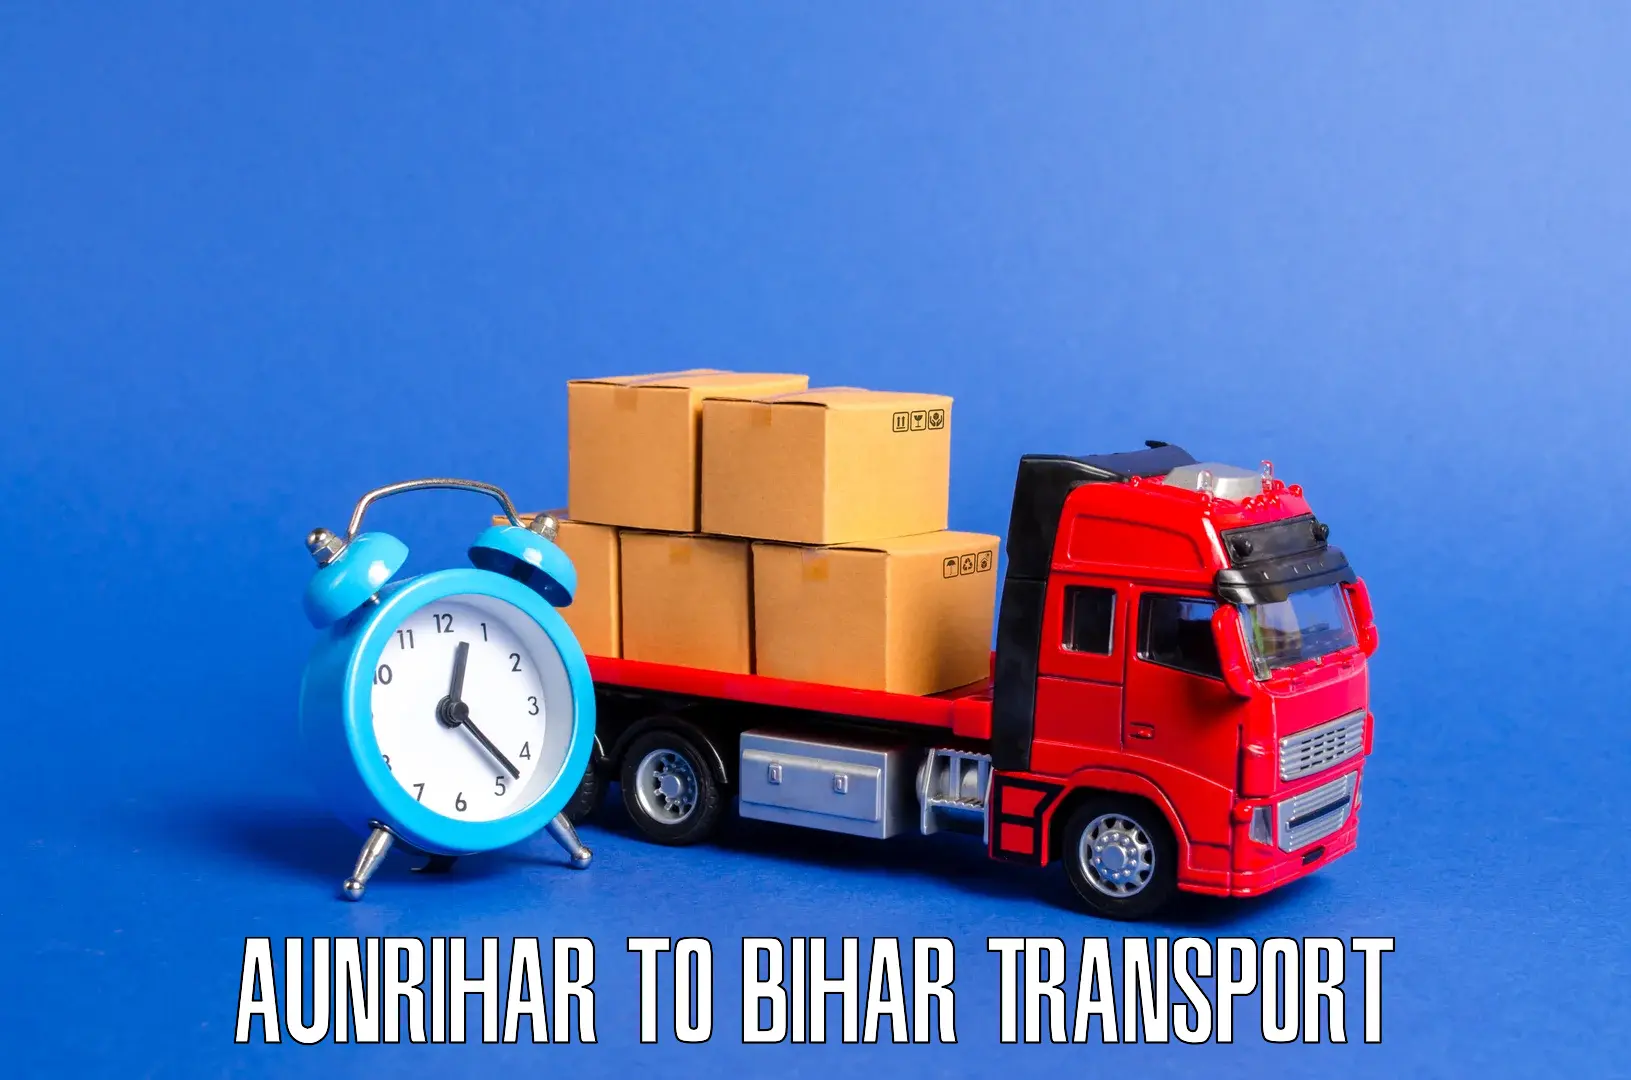 Luggage transport services Aunrihar to Bhabua